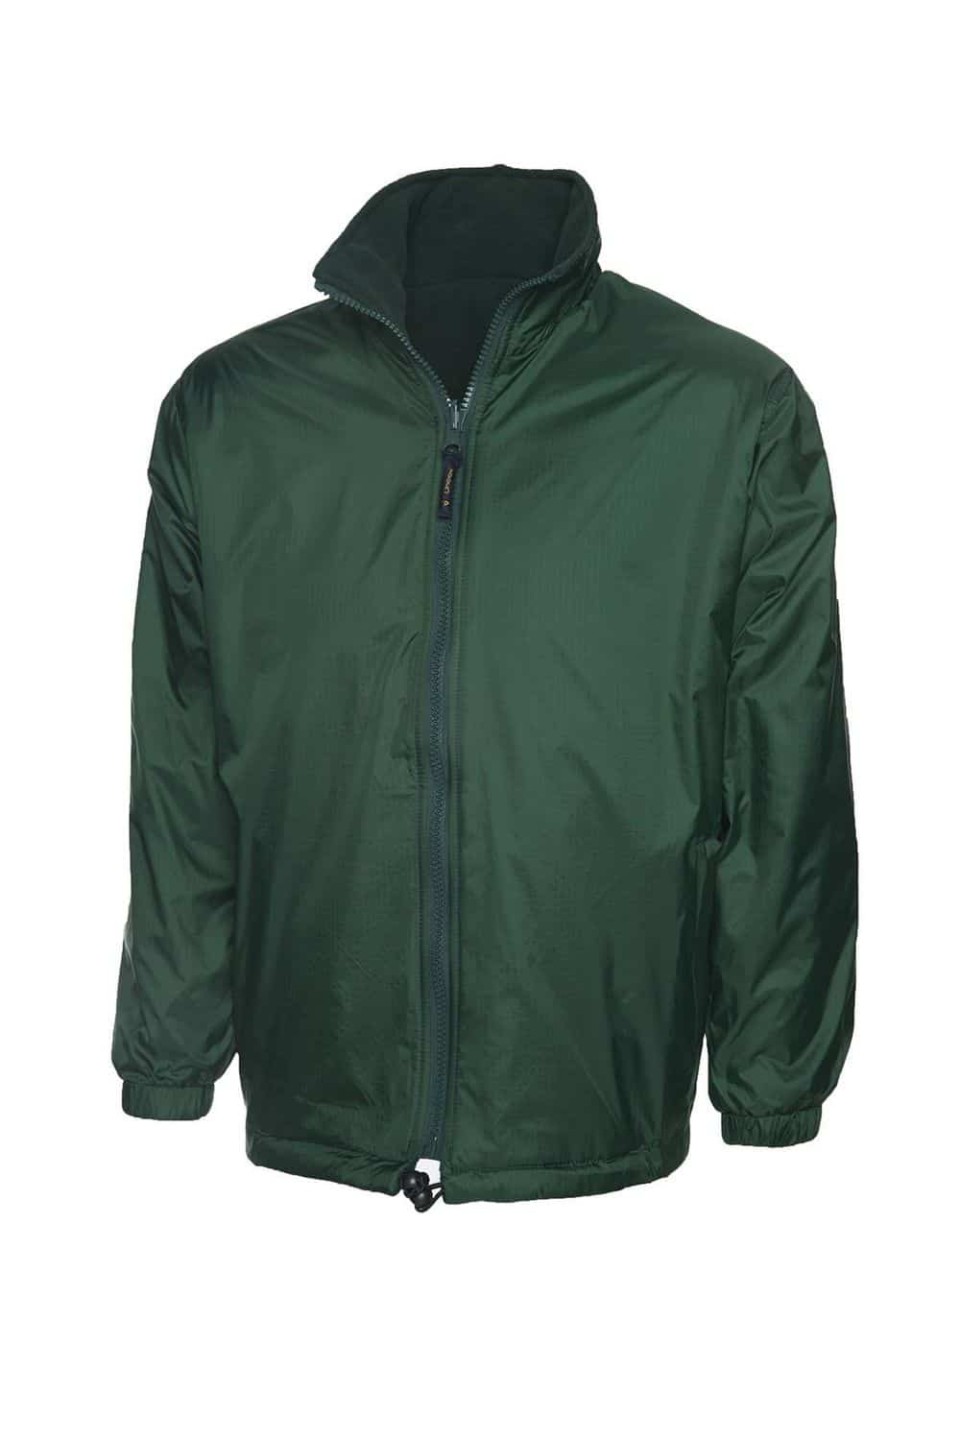 Uneek Premium Reversible Fleece Jacket